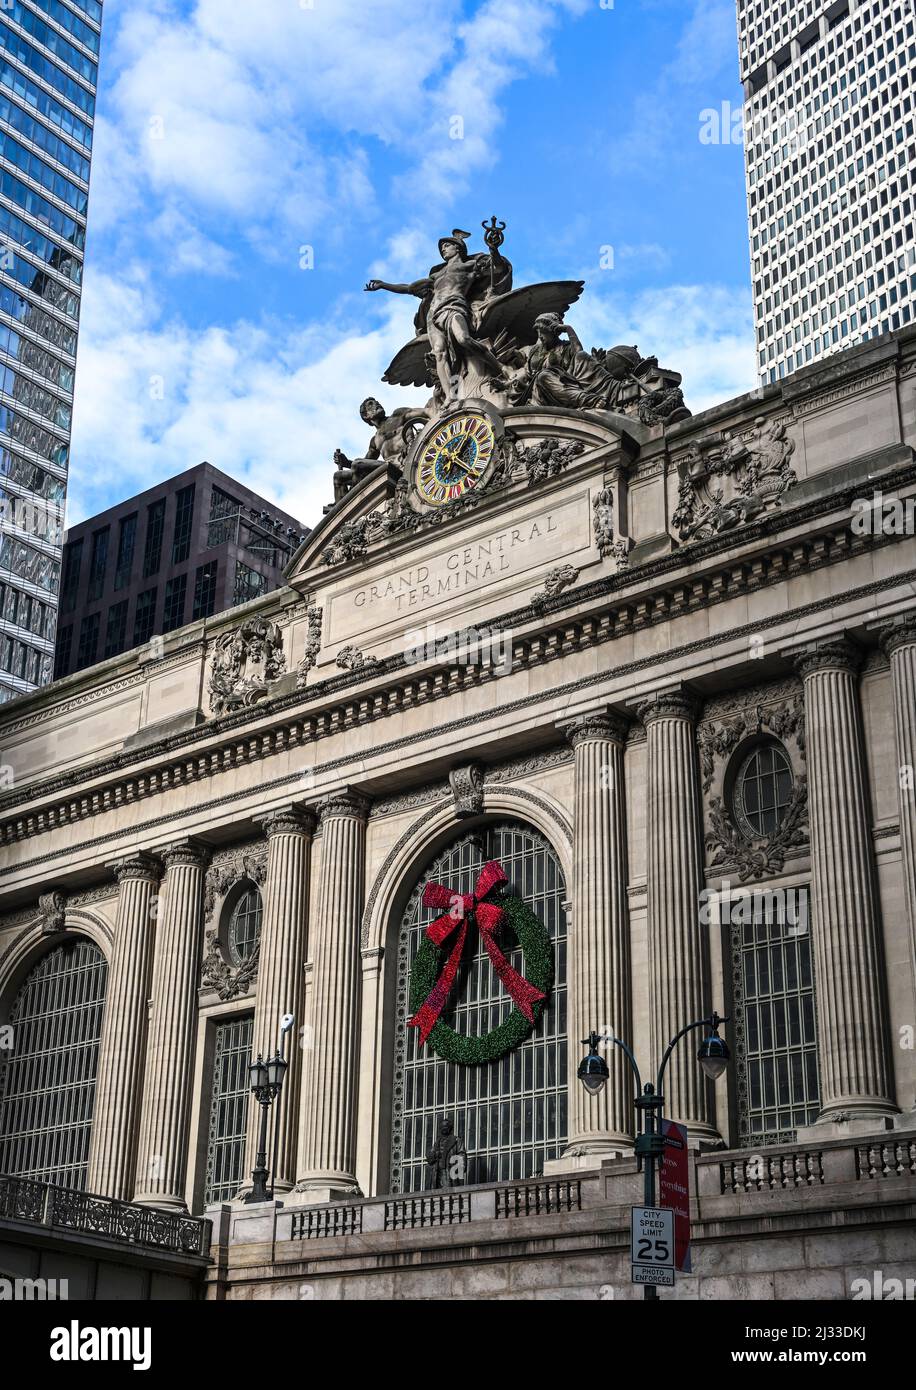 Entrée au Grand Central terminal de New York à l'heure de Noël Banque D'Images